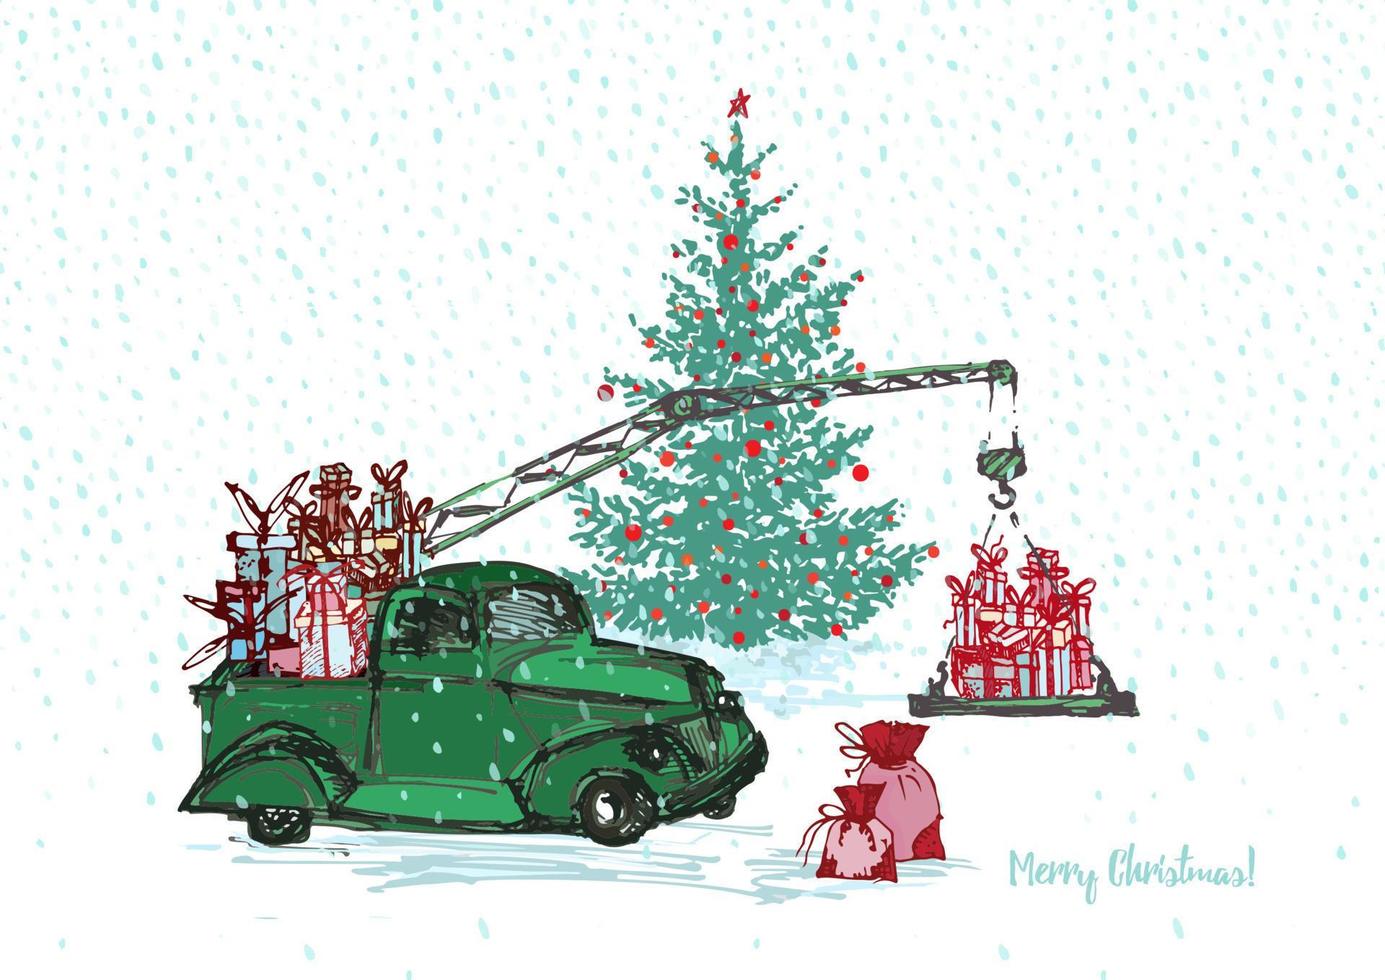 carte festive du nouvel an 2018. camion-grue vert avec sapin décoré de boules rouges et de cadeaux de noël isolés sur fond neigeux blanc vecteur